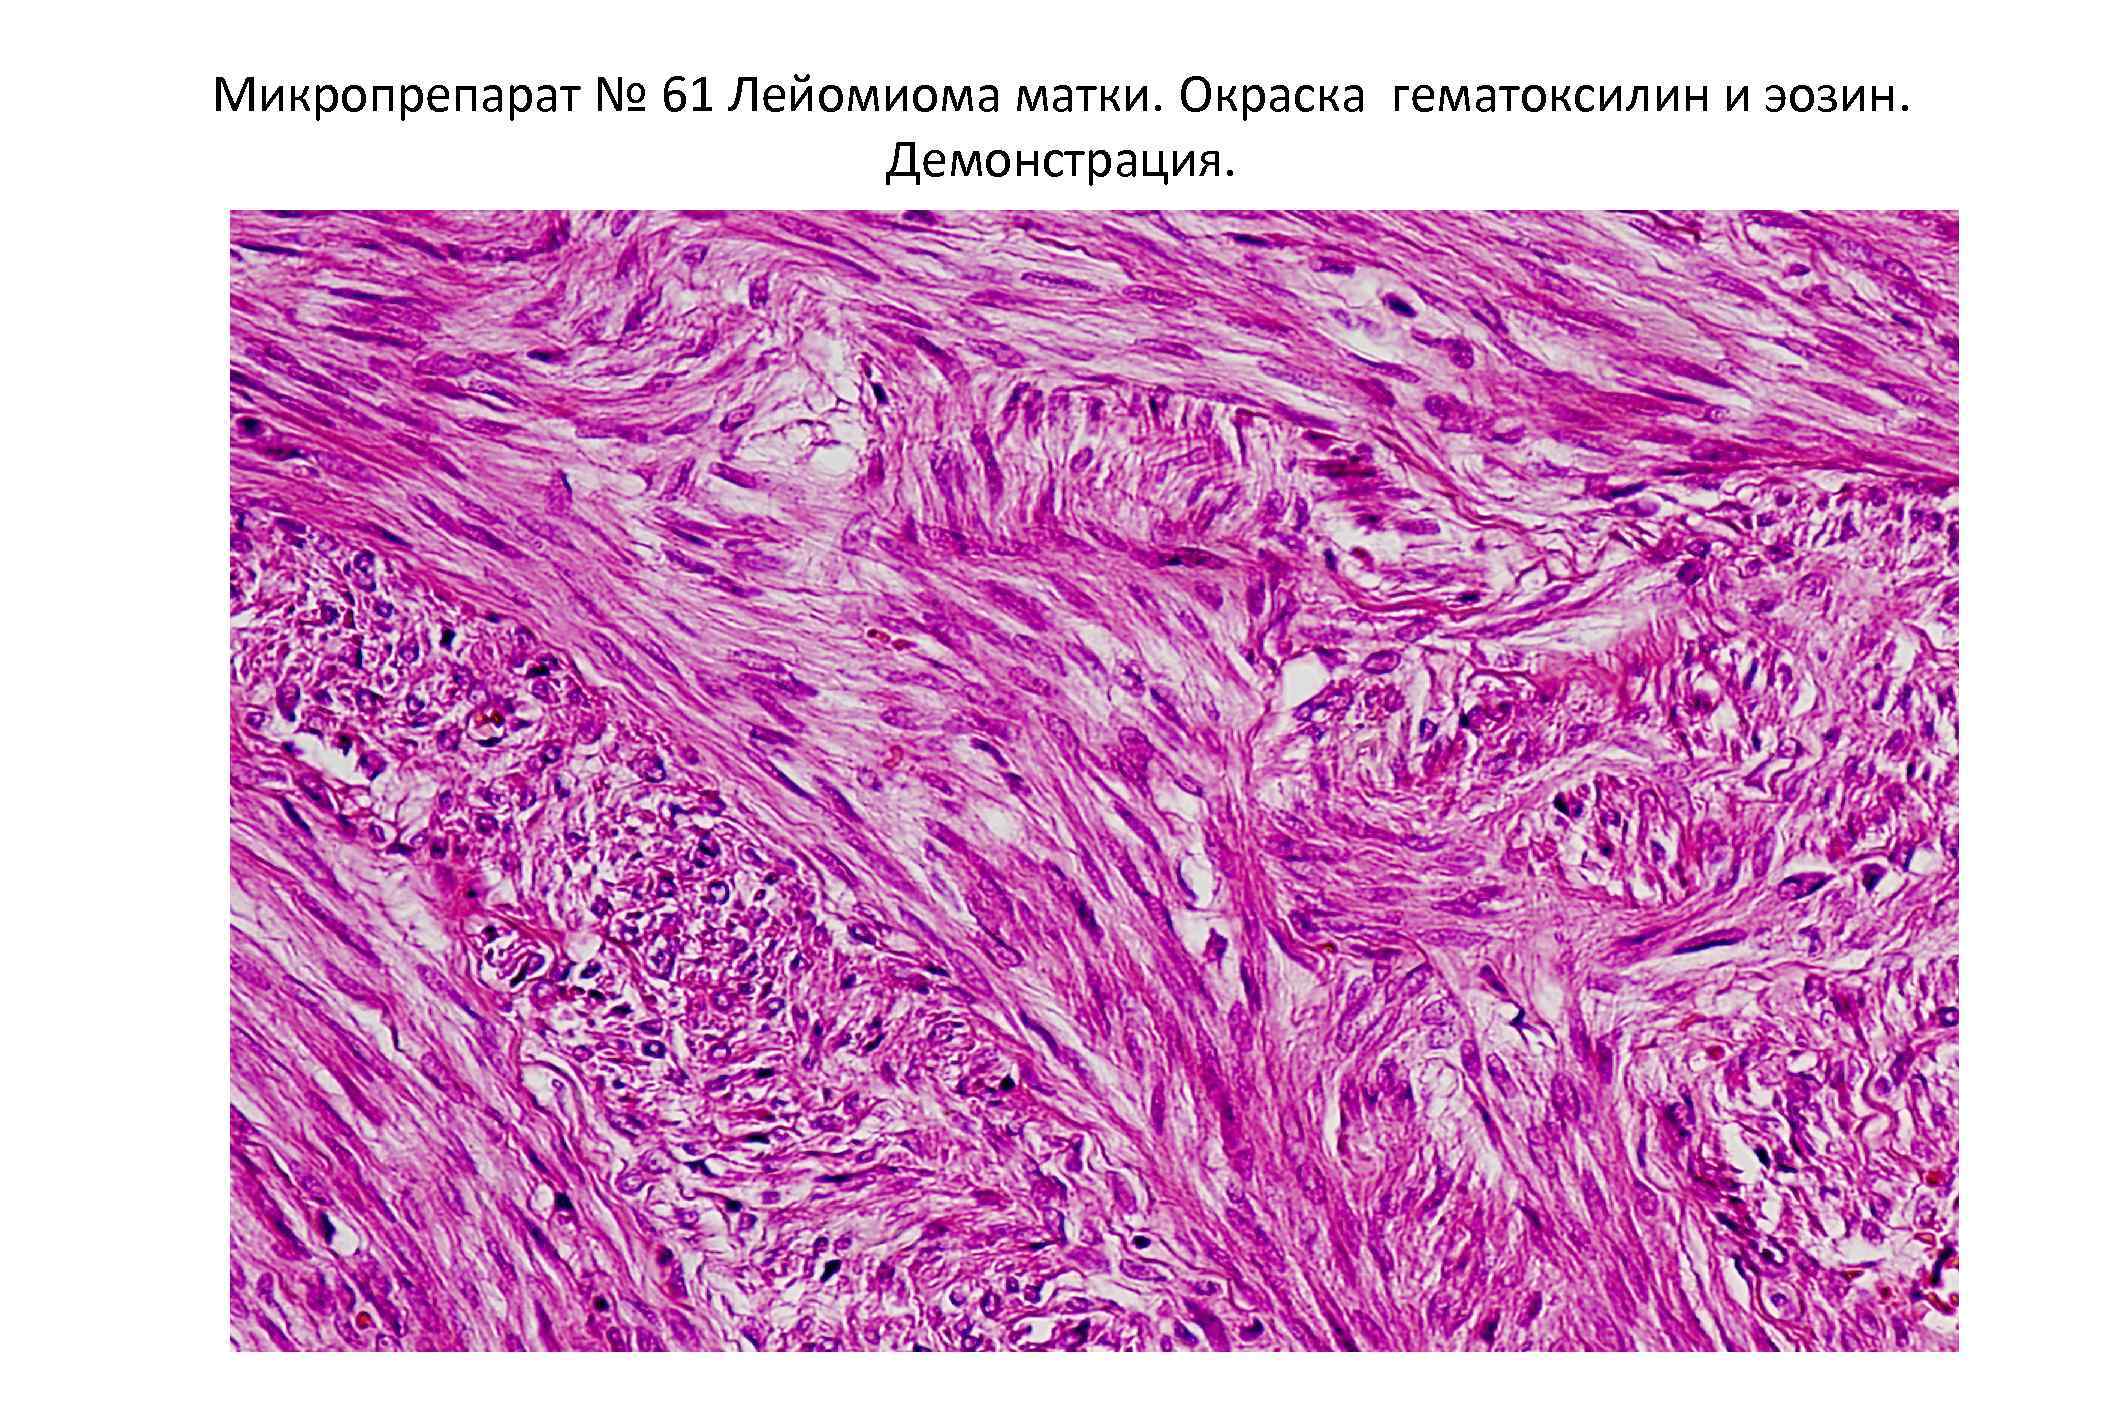 Фибролейомиома матки гистология